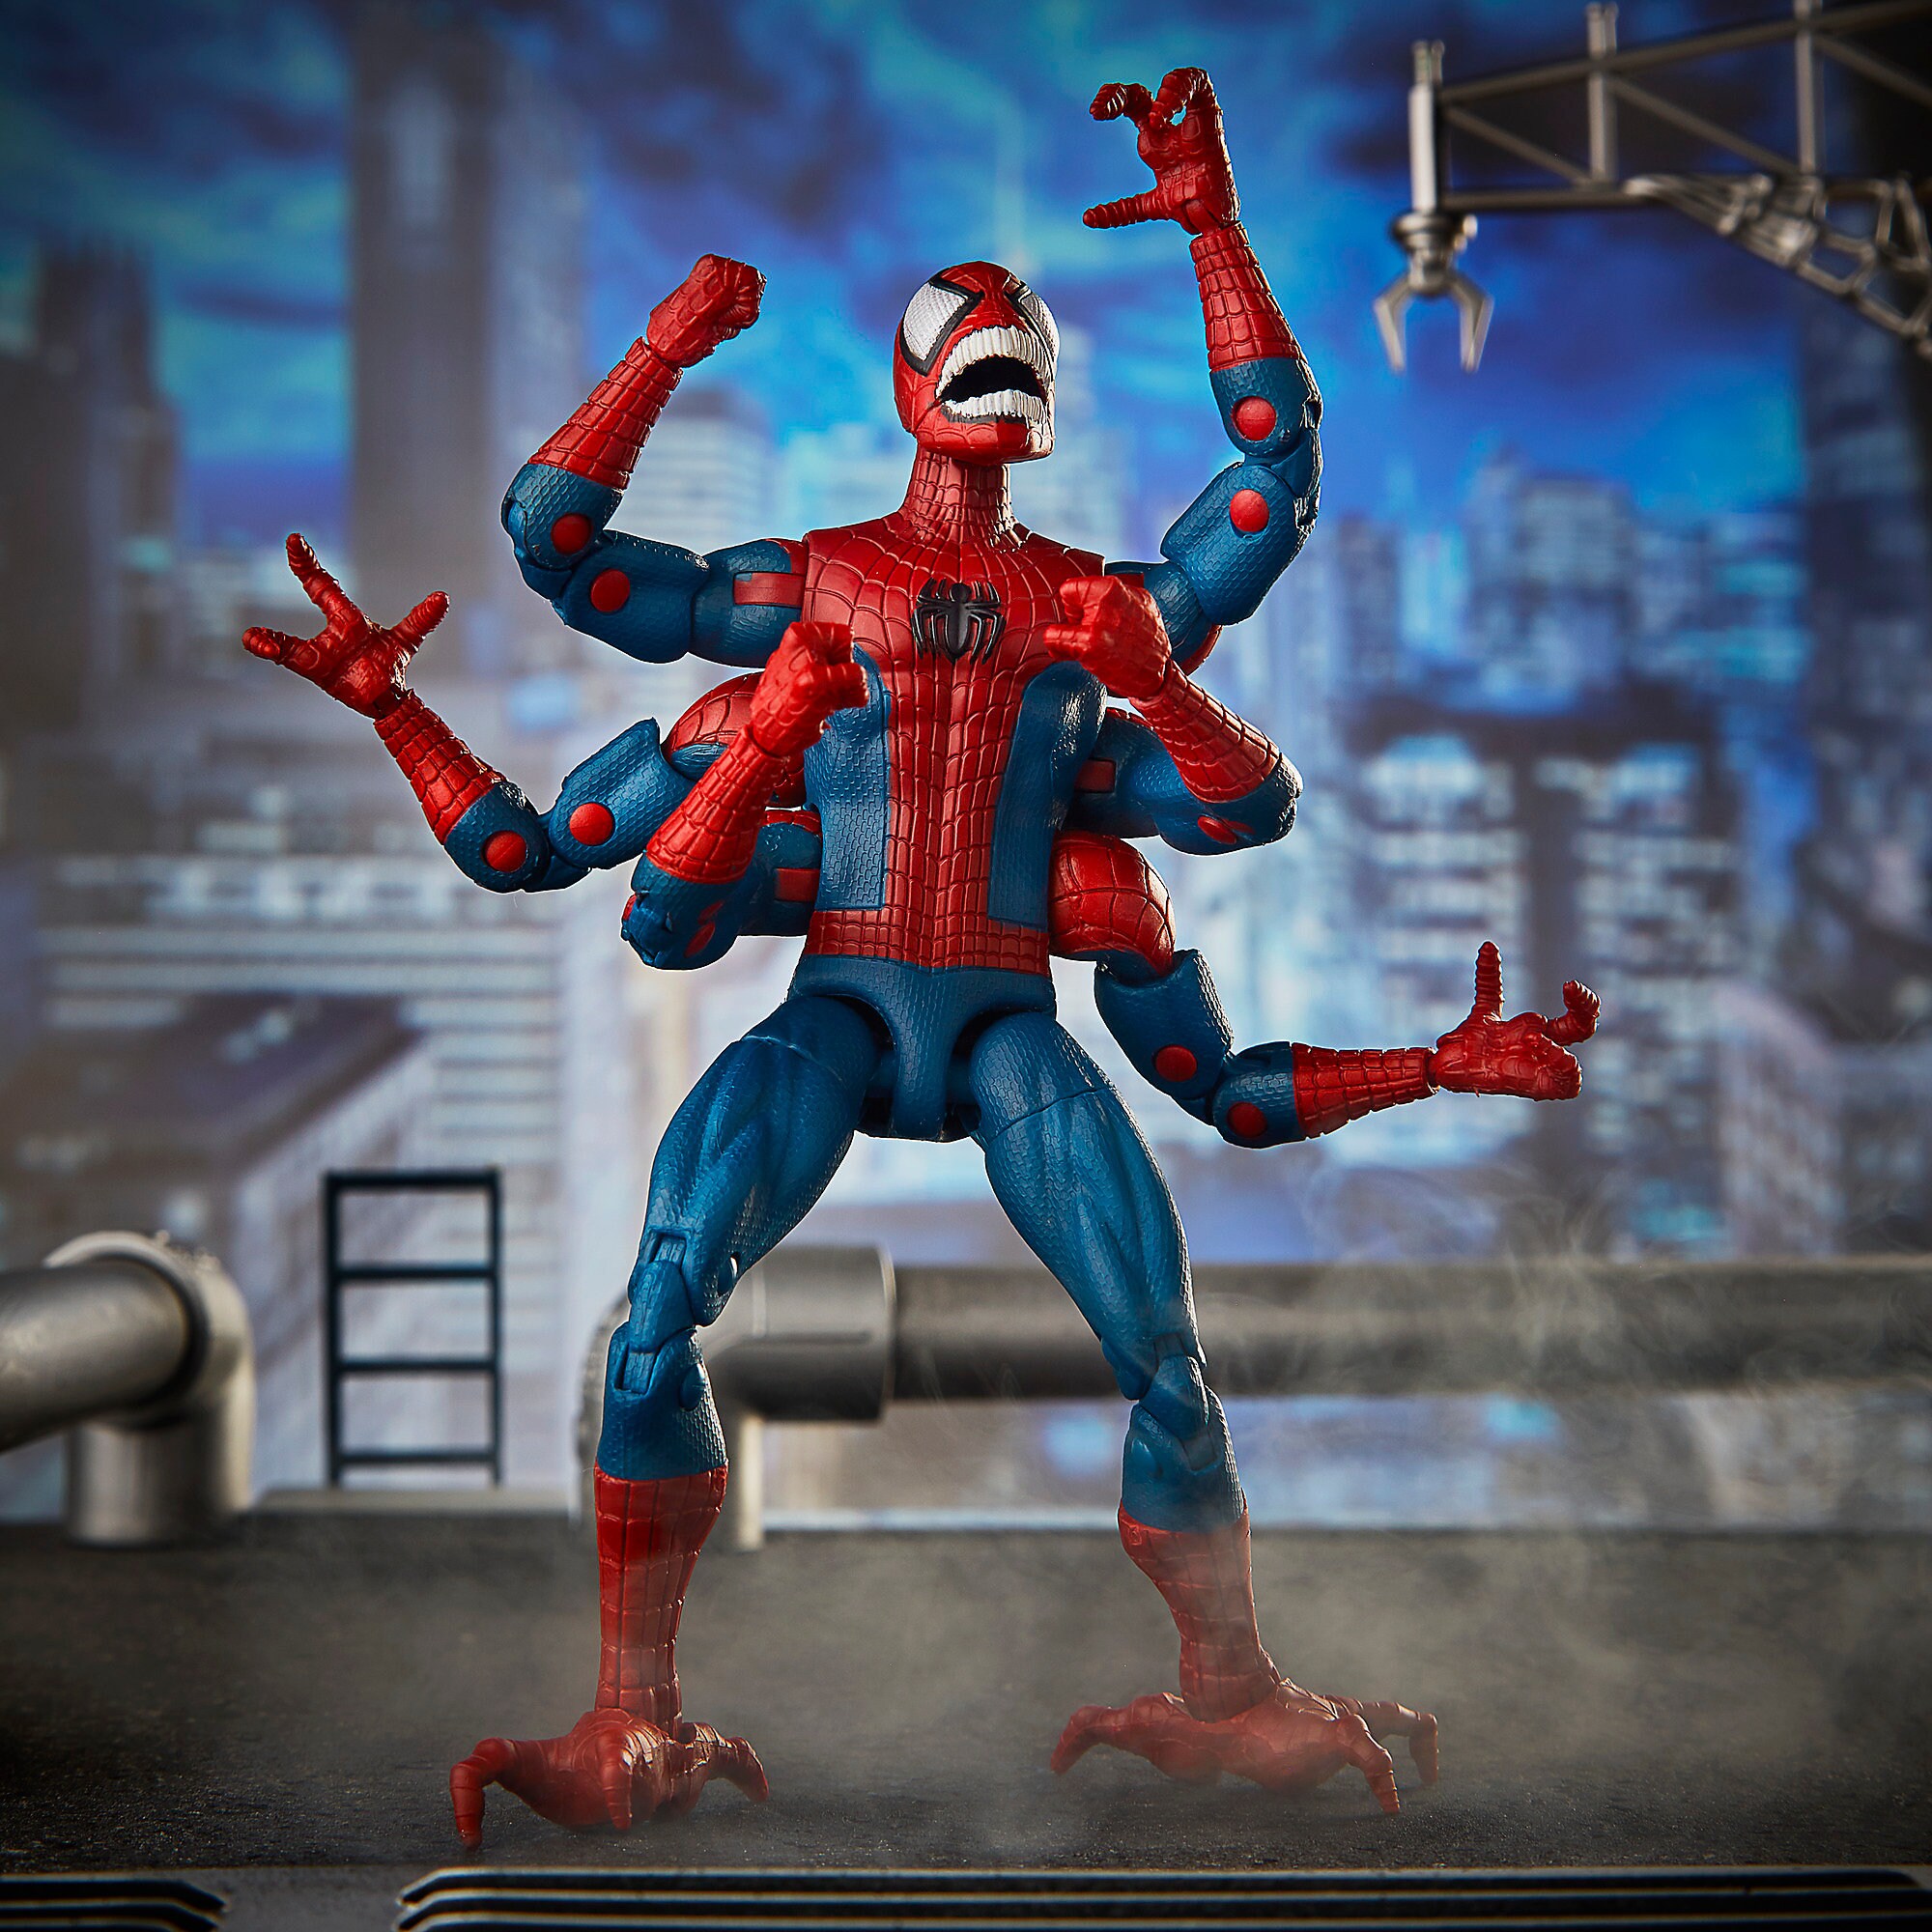 Doppelganger Spider-Man Action Figure - Spider-Man Legends Series